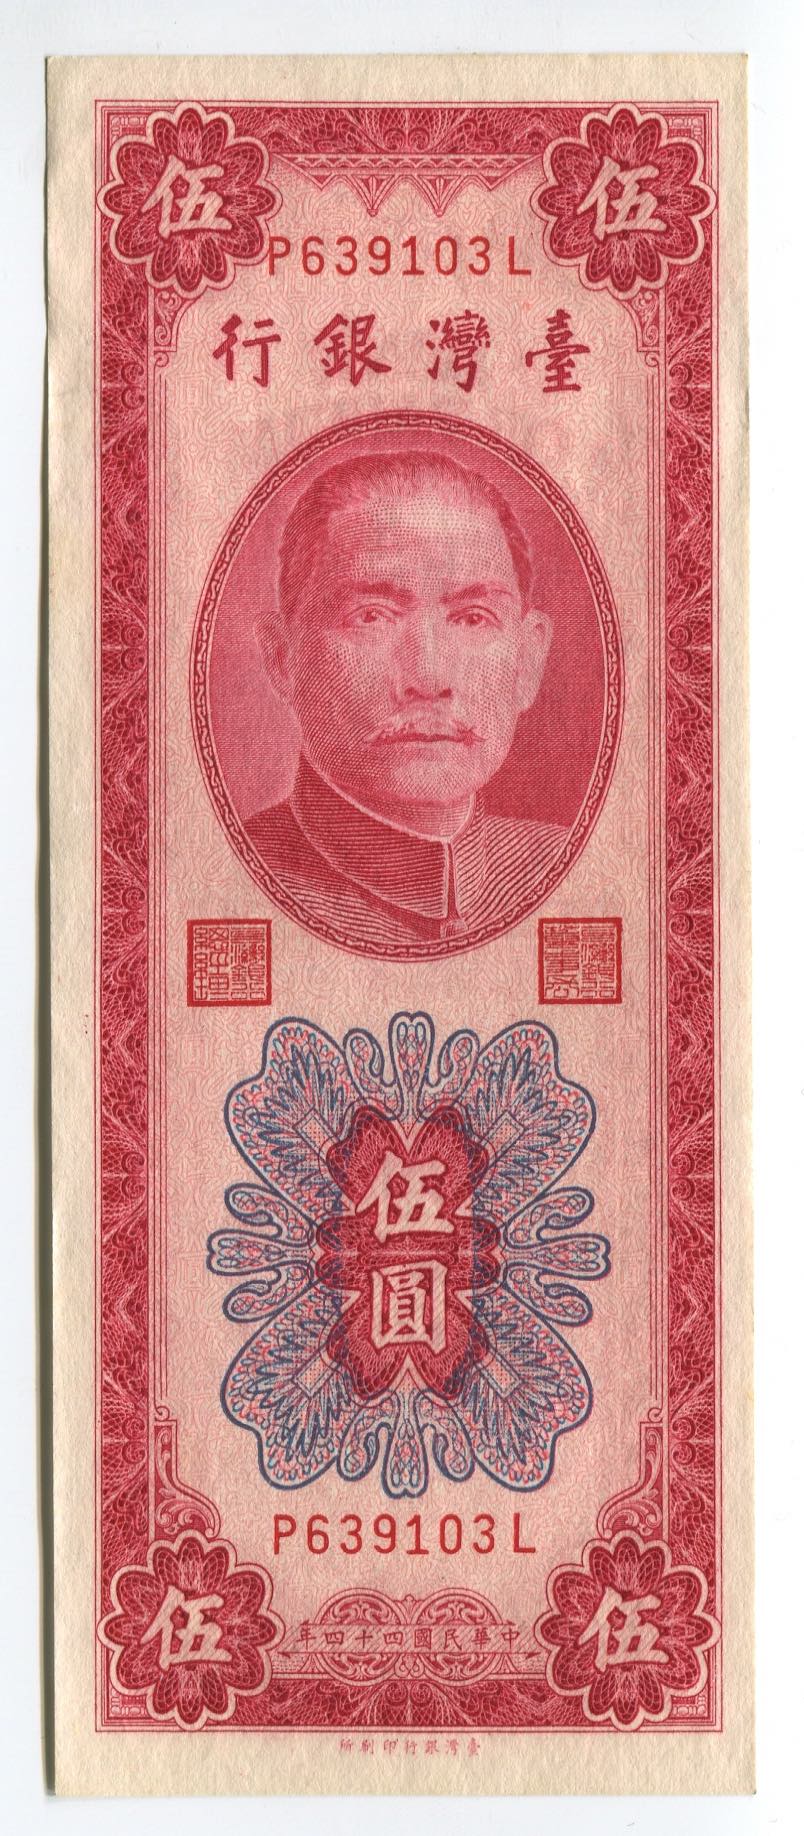 China - Taiwan 5 Yuan ... 